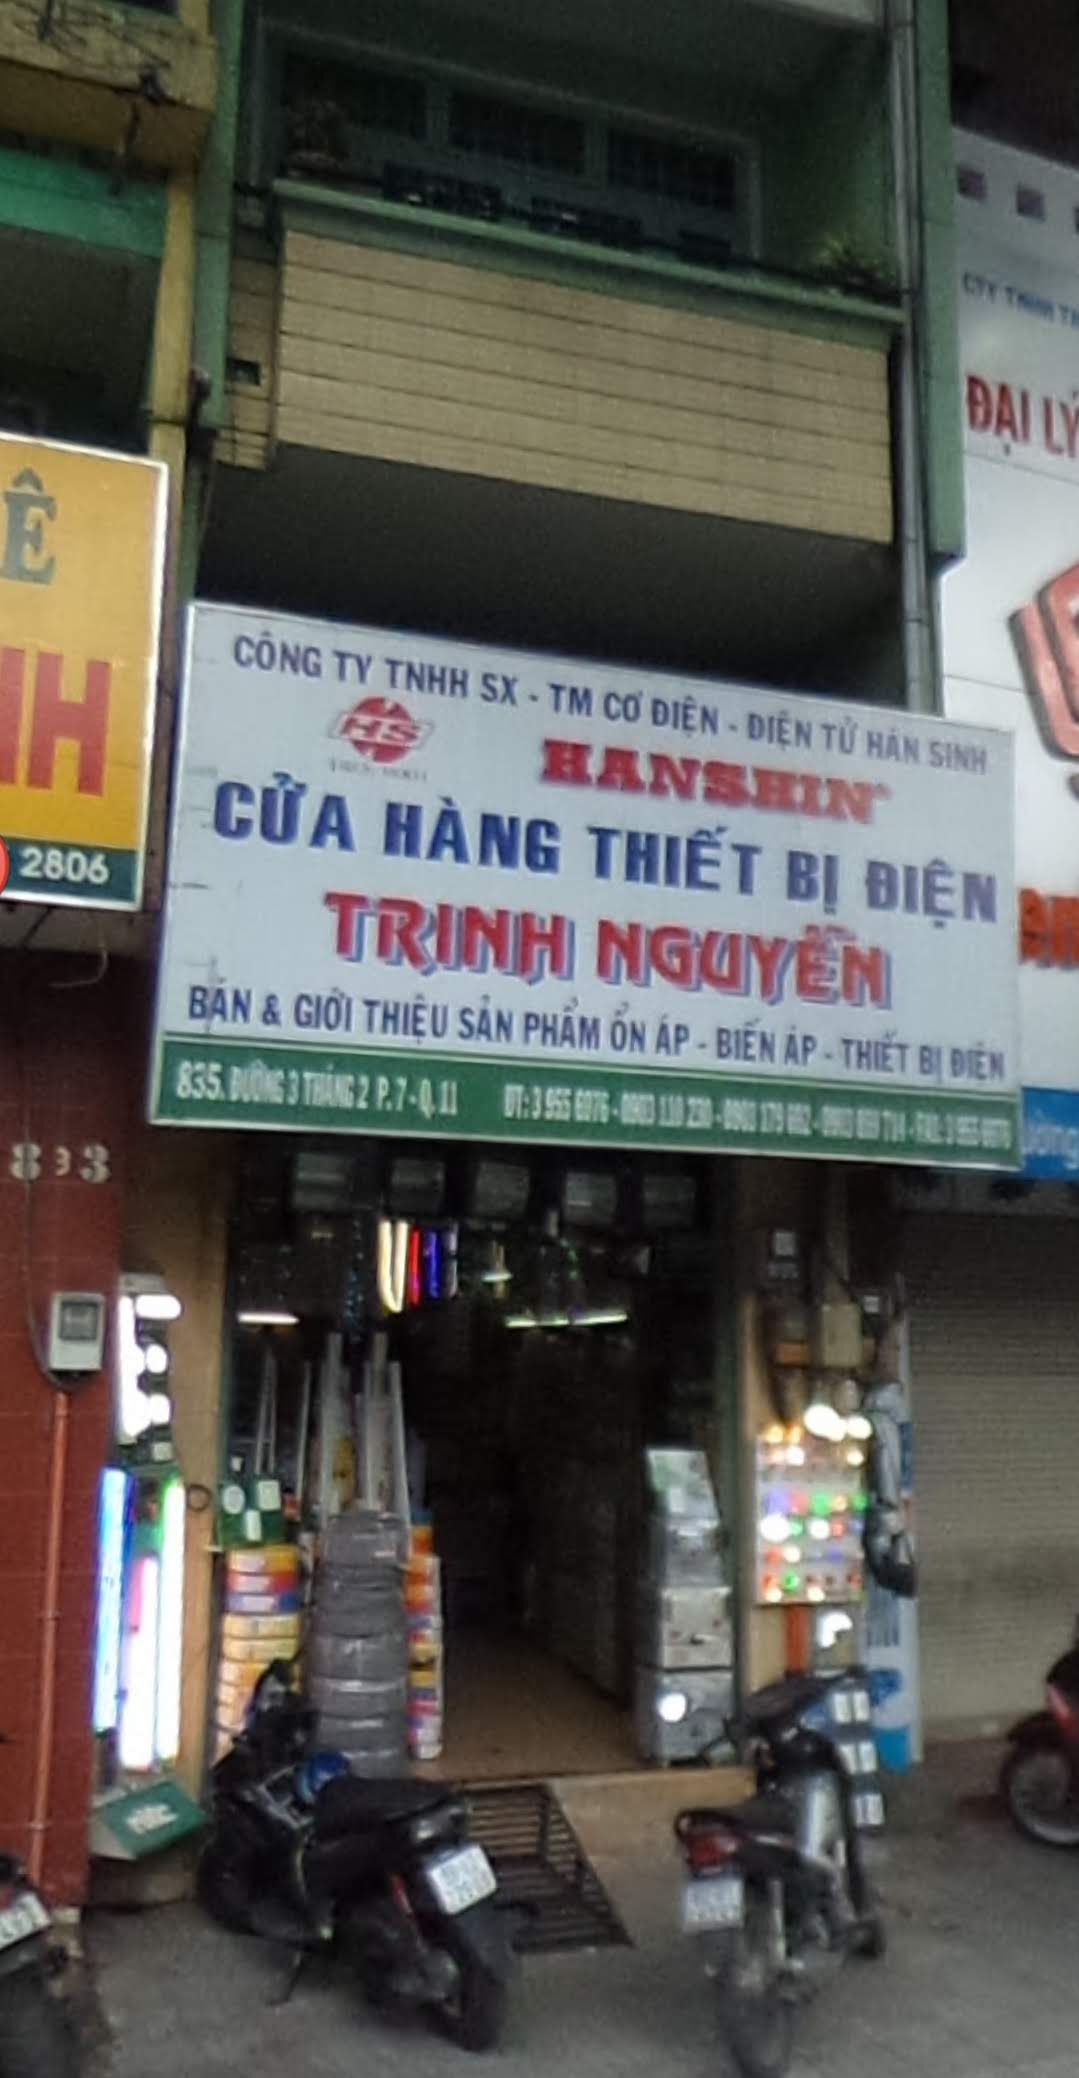 Cửa hàng thiết bị điện Trinh Nguyễn.